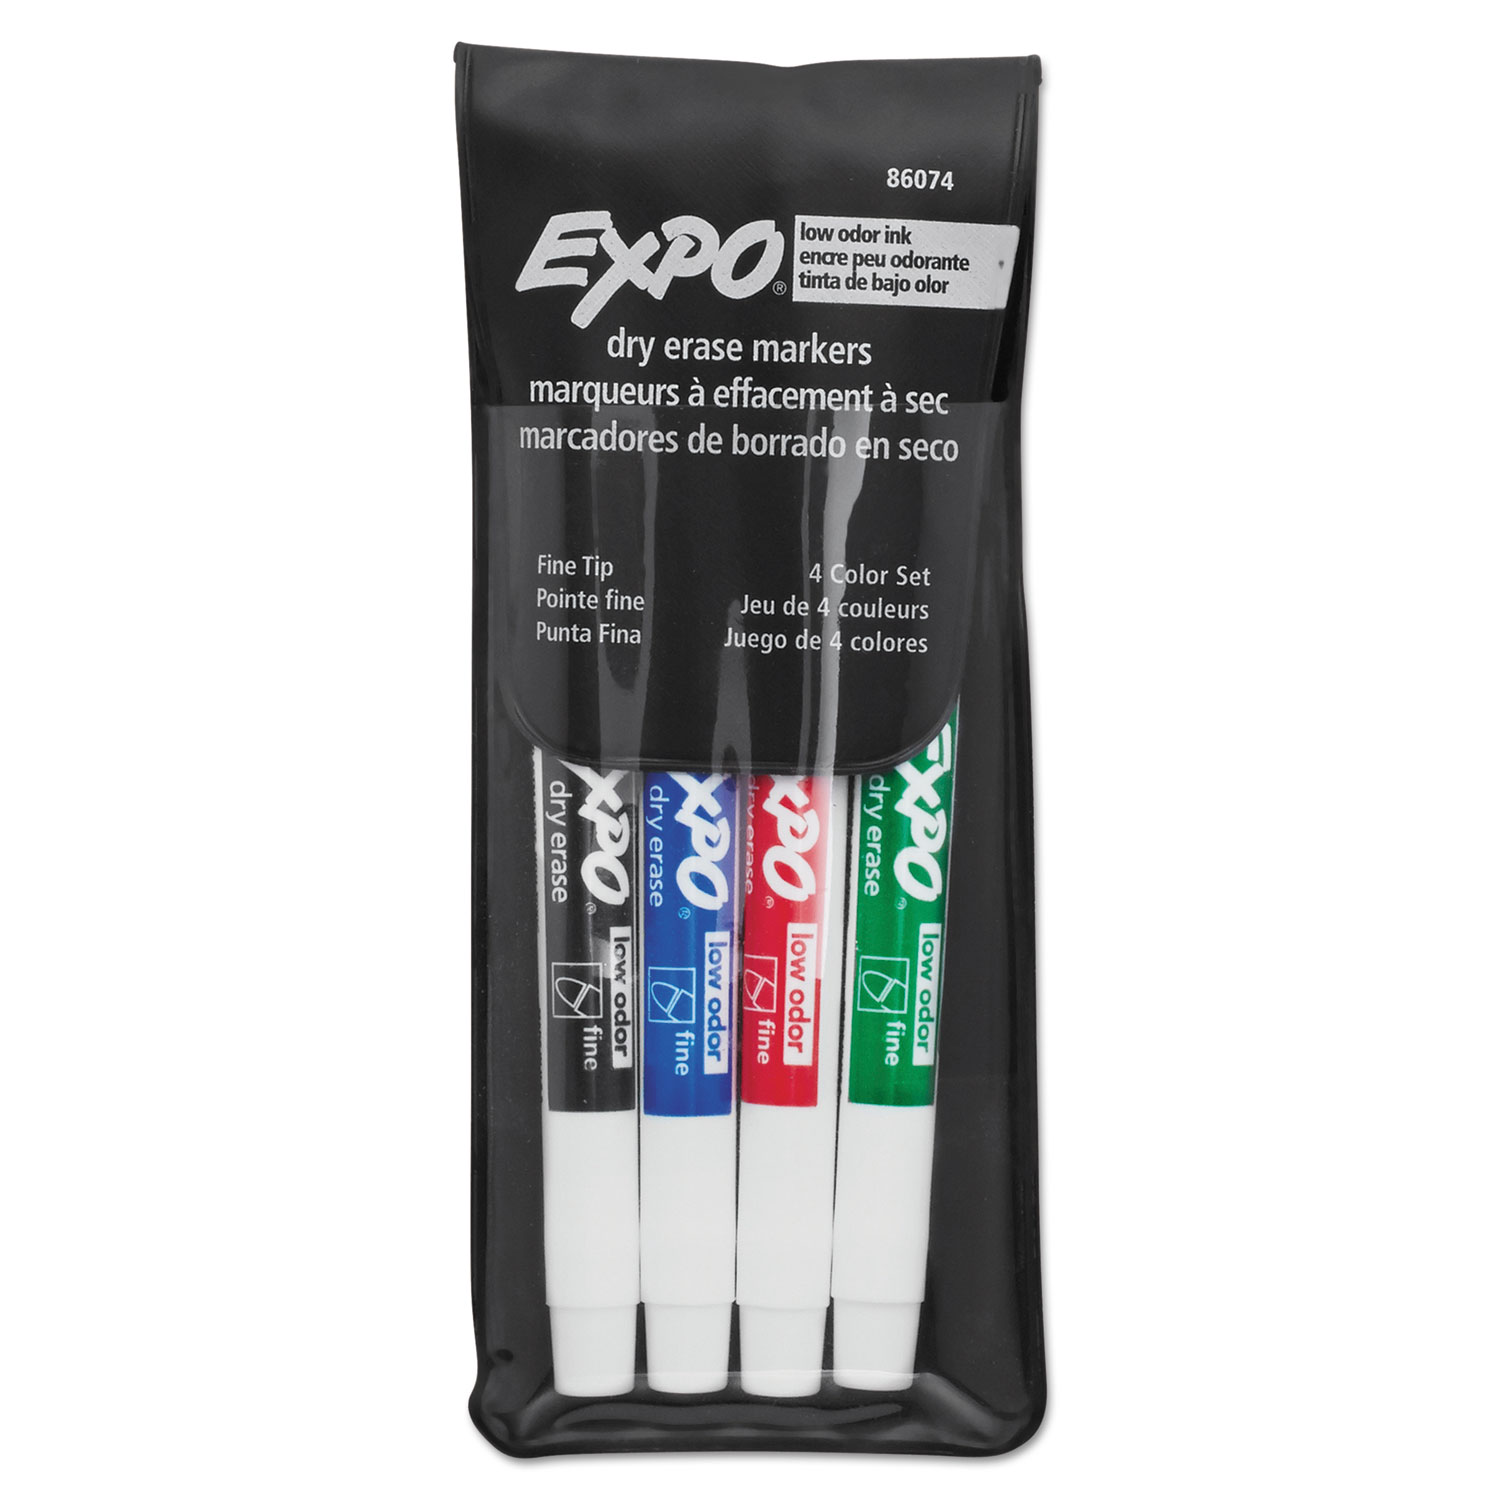 Low-Odor Dry-Erase Marker, Extra-Fine Bullet Tip, Black